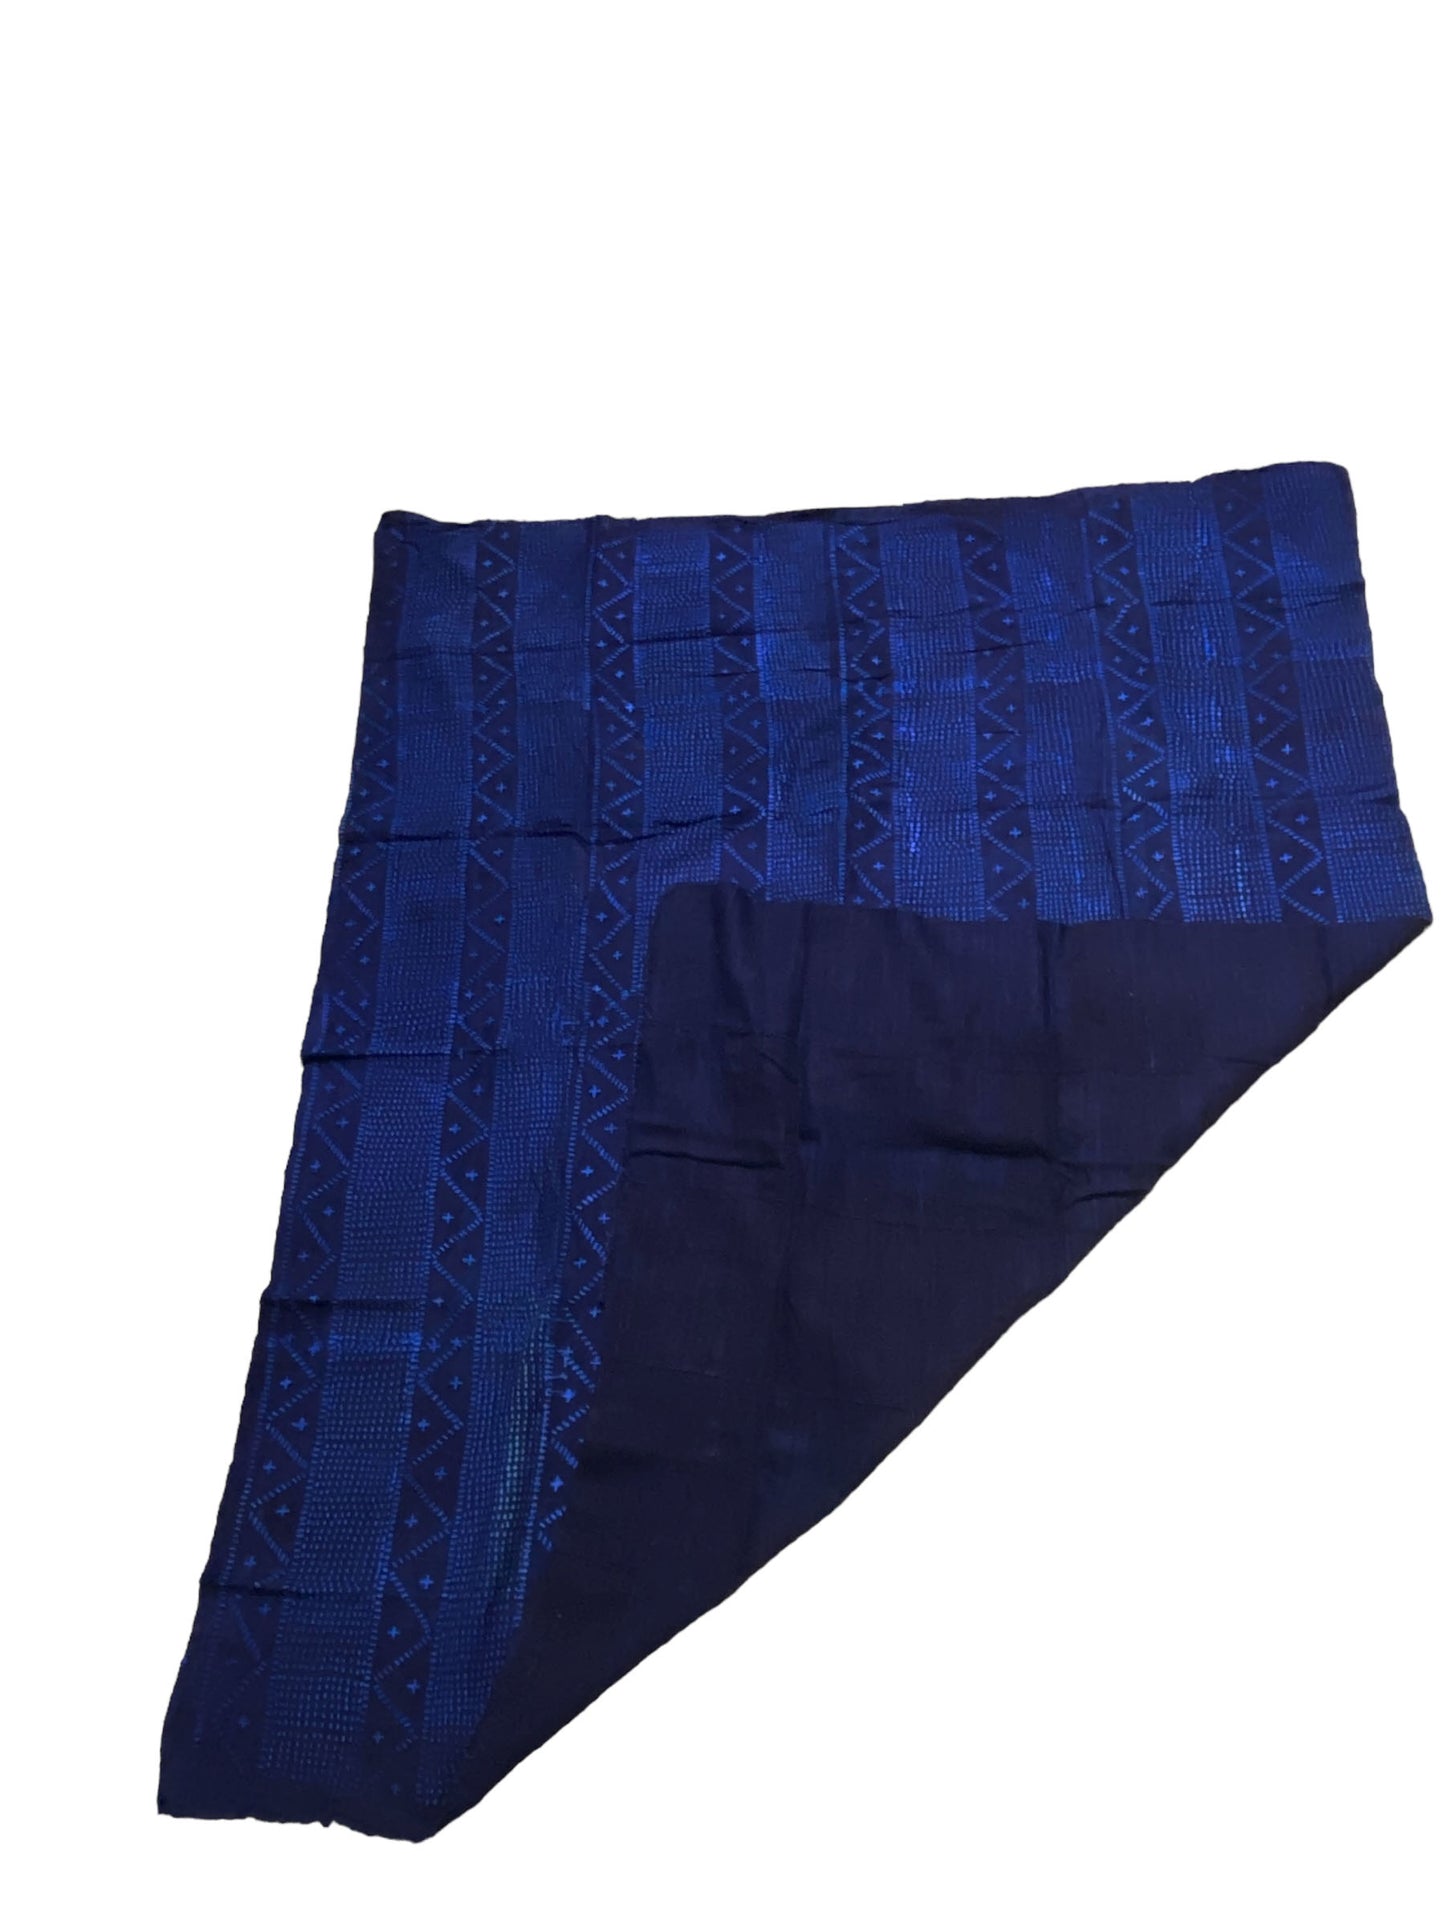 #7094 Malian Indigo Mud Cloth Textile  45" by 53"